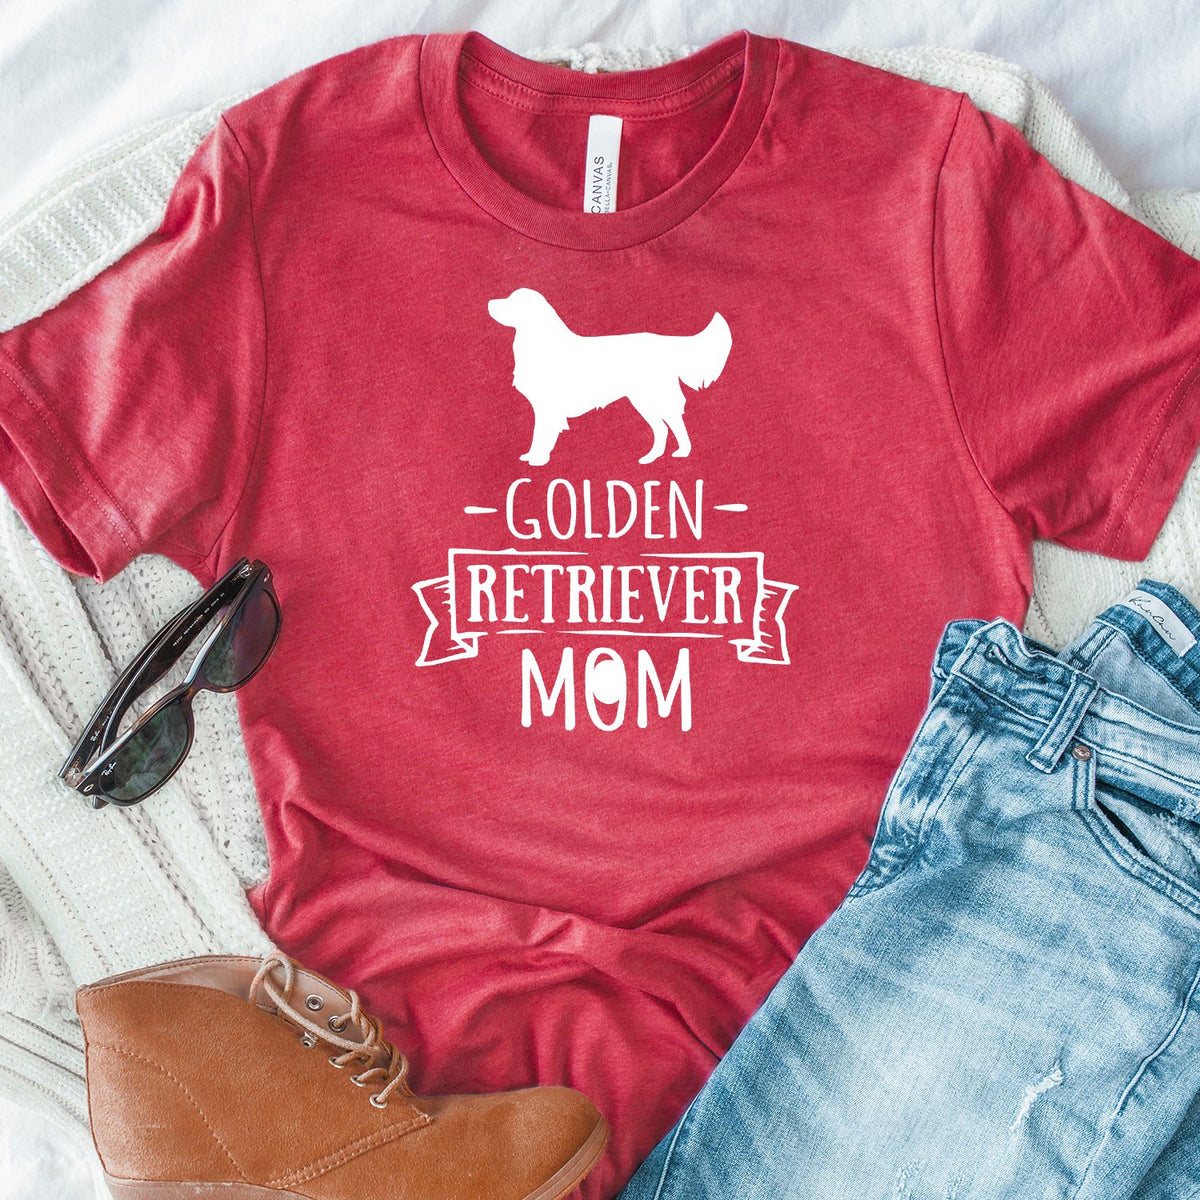 Golden Retriever Mom - Short Sleeve Tee Shirt